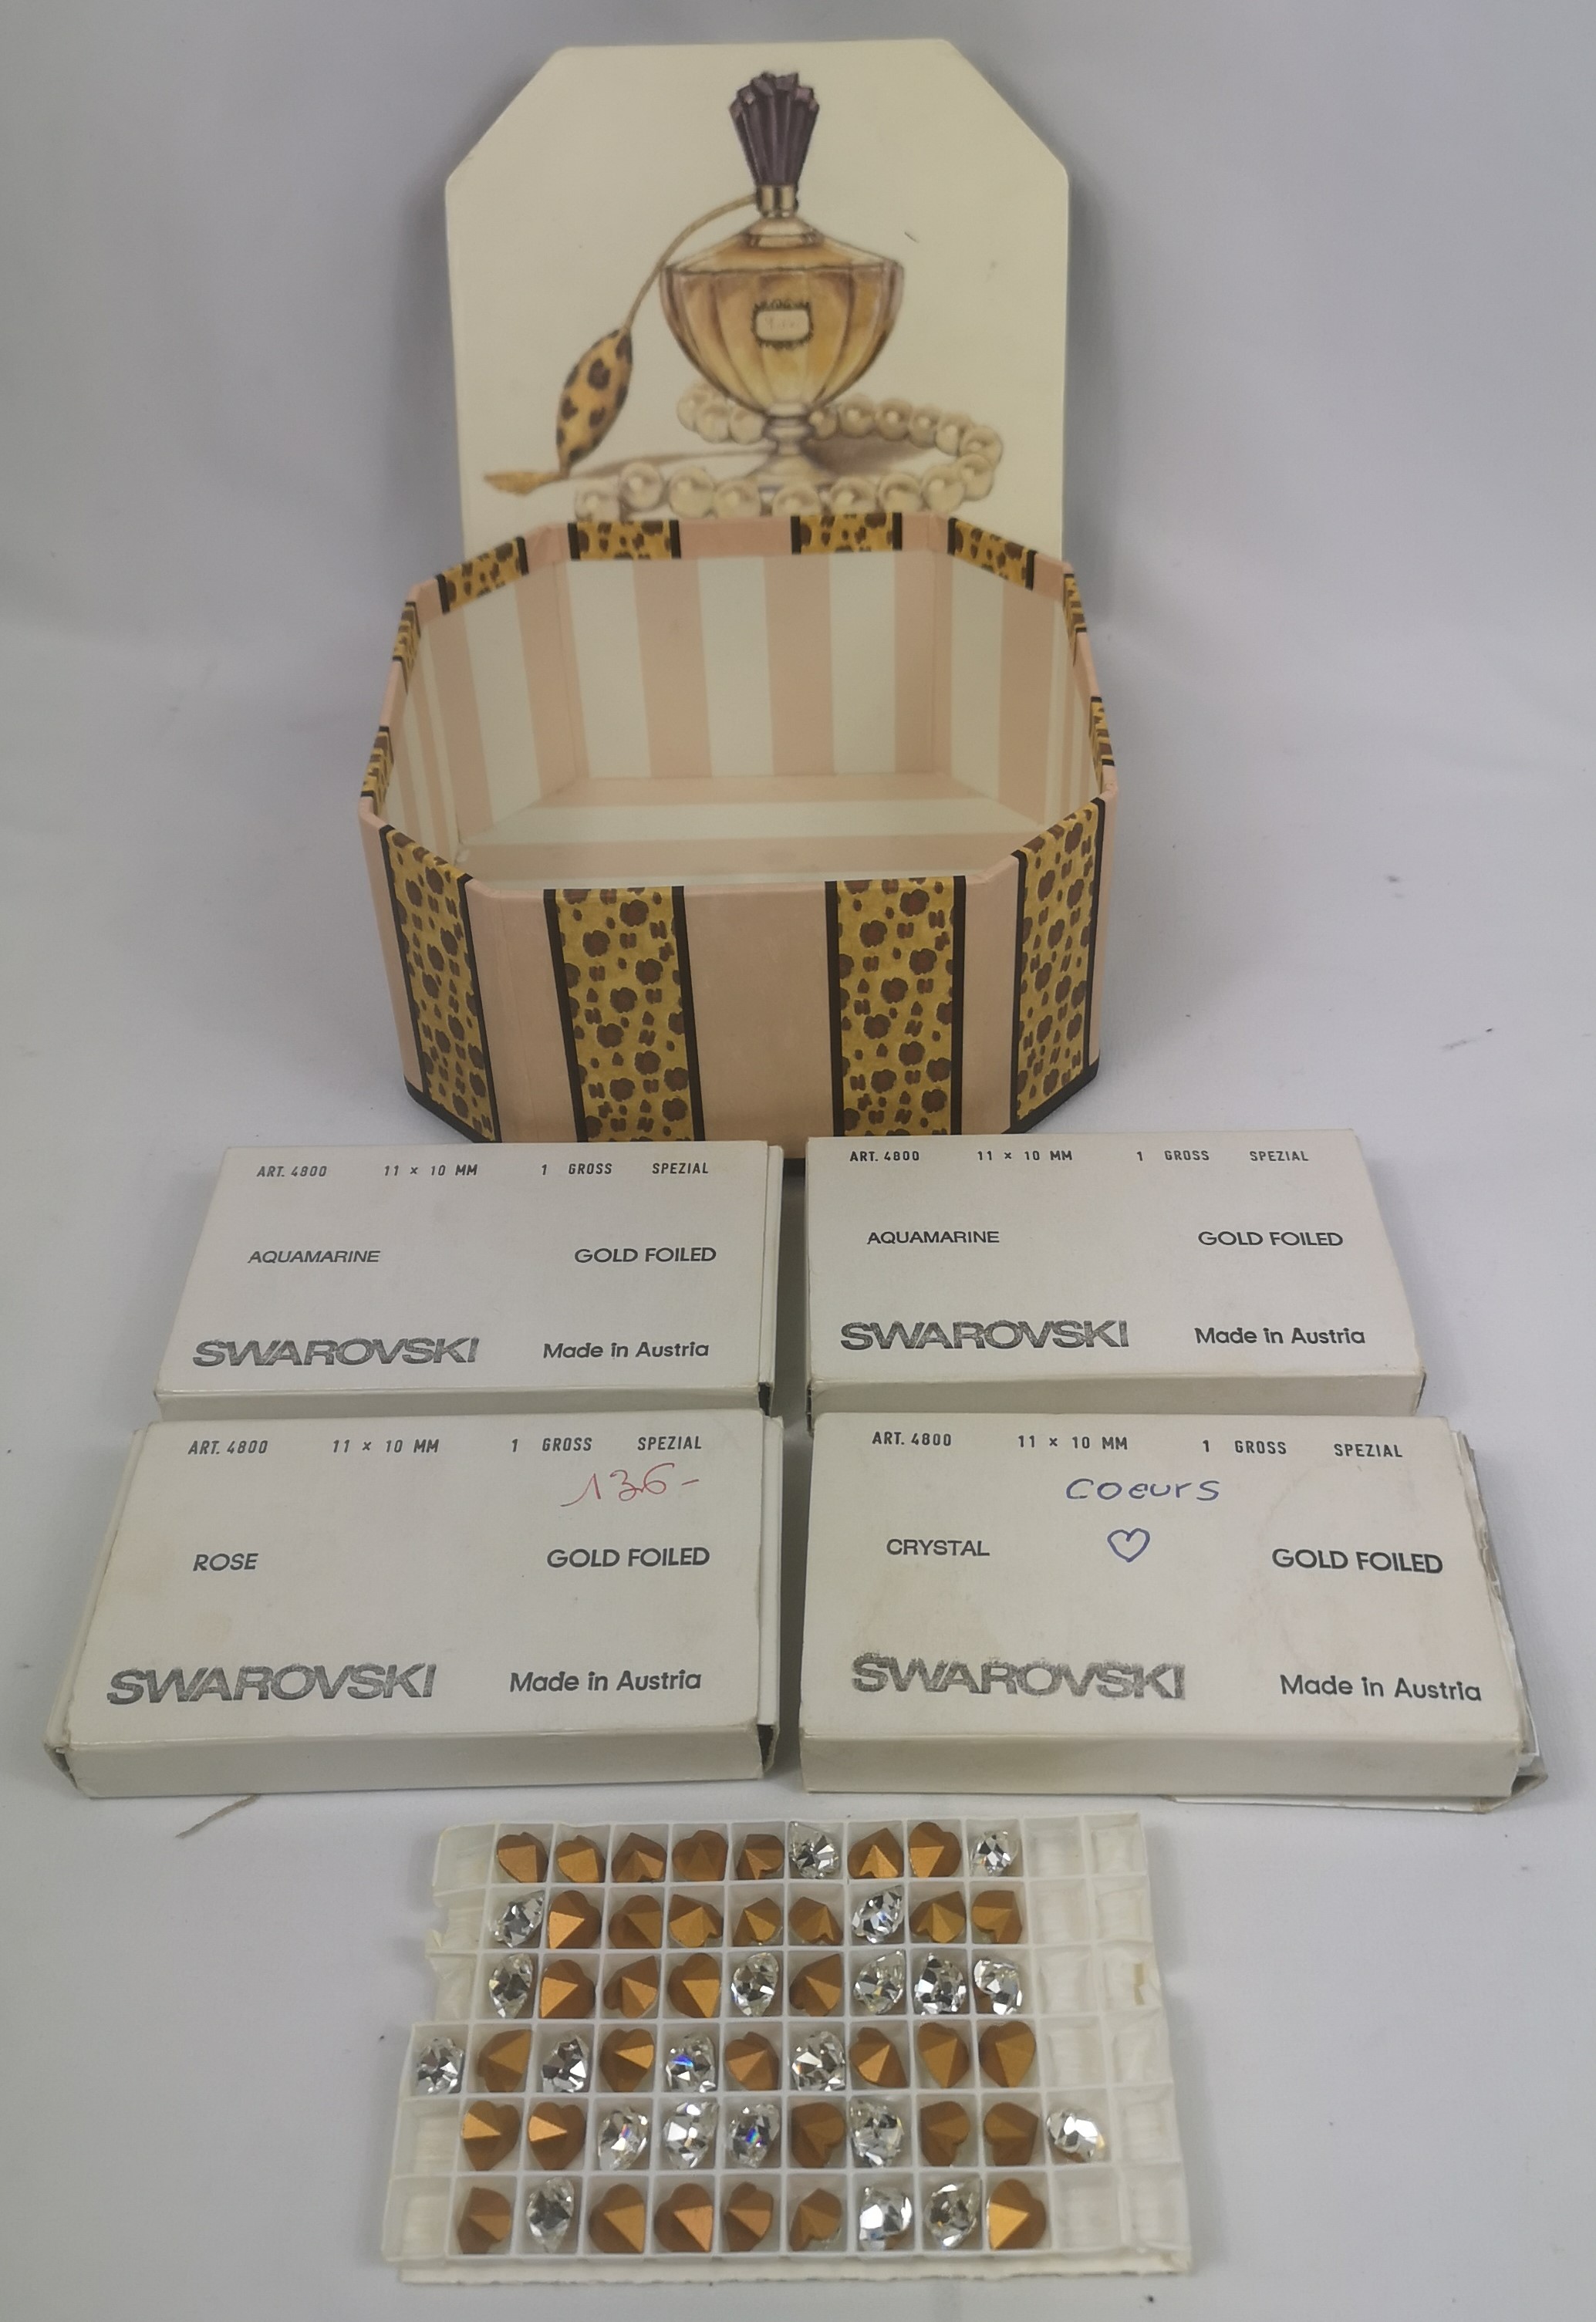 Four boxes of swarovski crystals